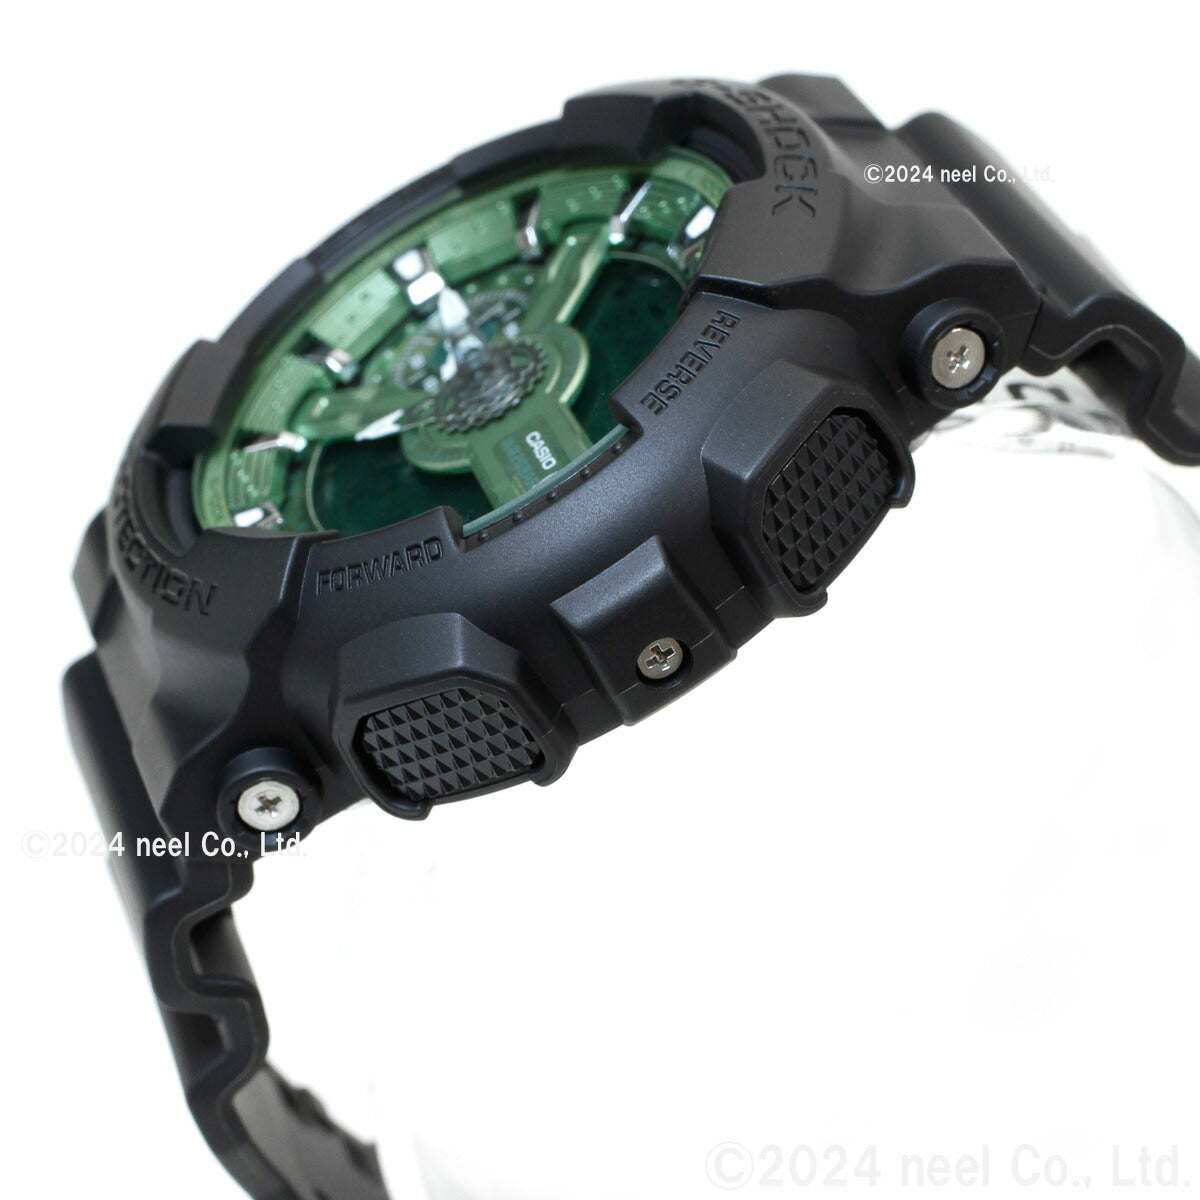 G-SHOCK カシオ Gショック CASIO アナデジ 腕時計 メンズ GA-110CD-1A3JF Metallic Color Dial Series セージグリーン【2024 新作】